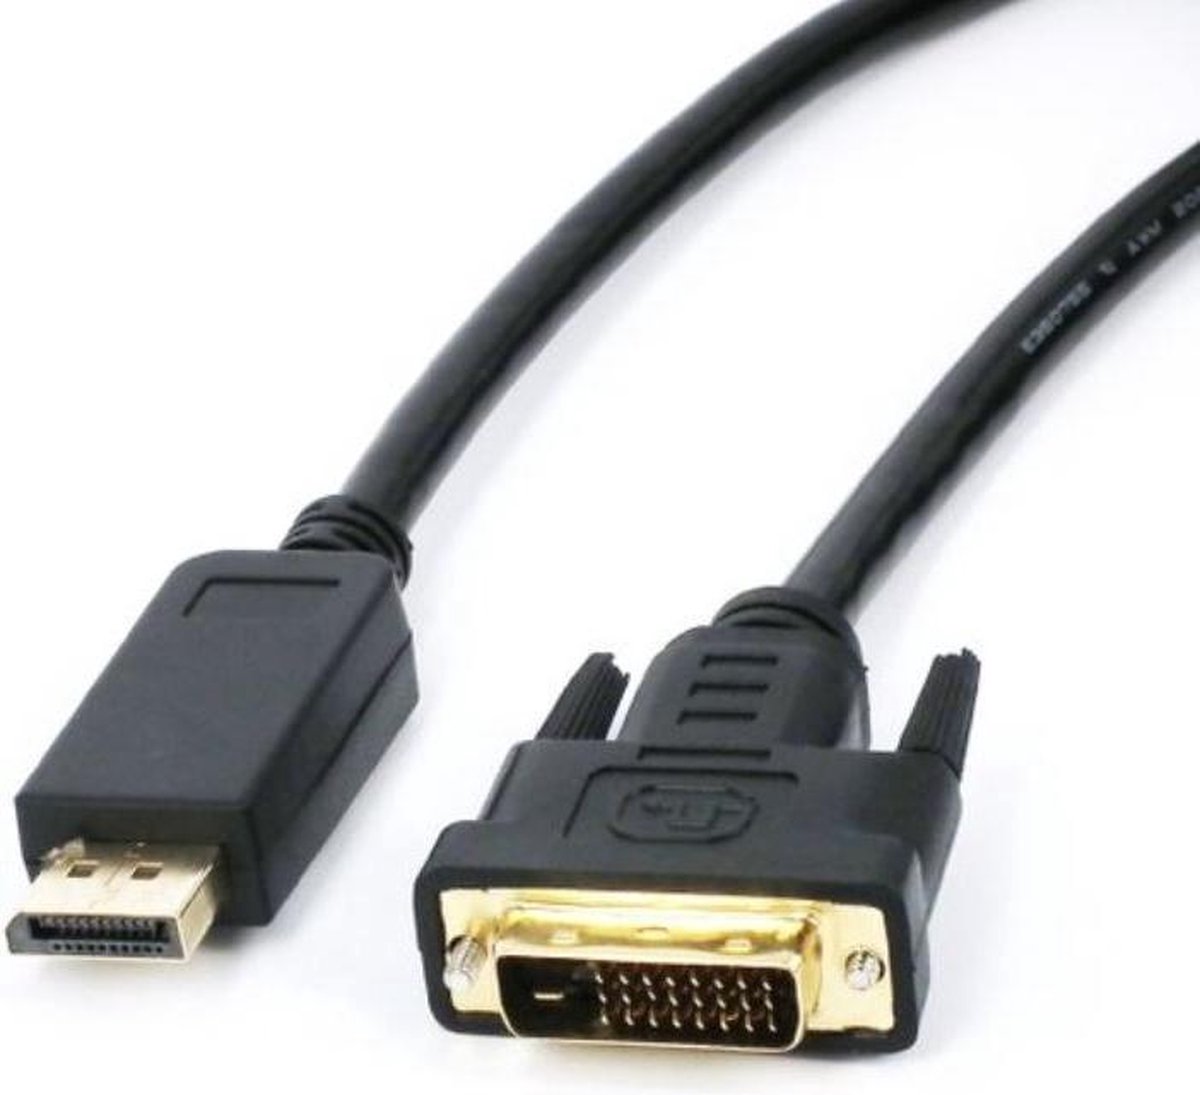 DisplayPort naar DVI kabel, 1.8 meter - Nowlinq